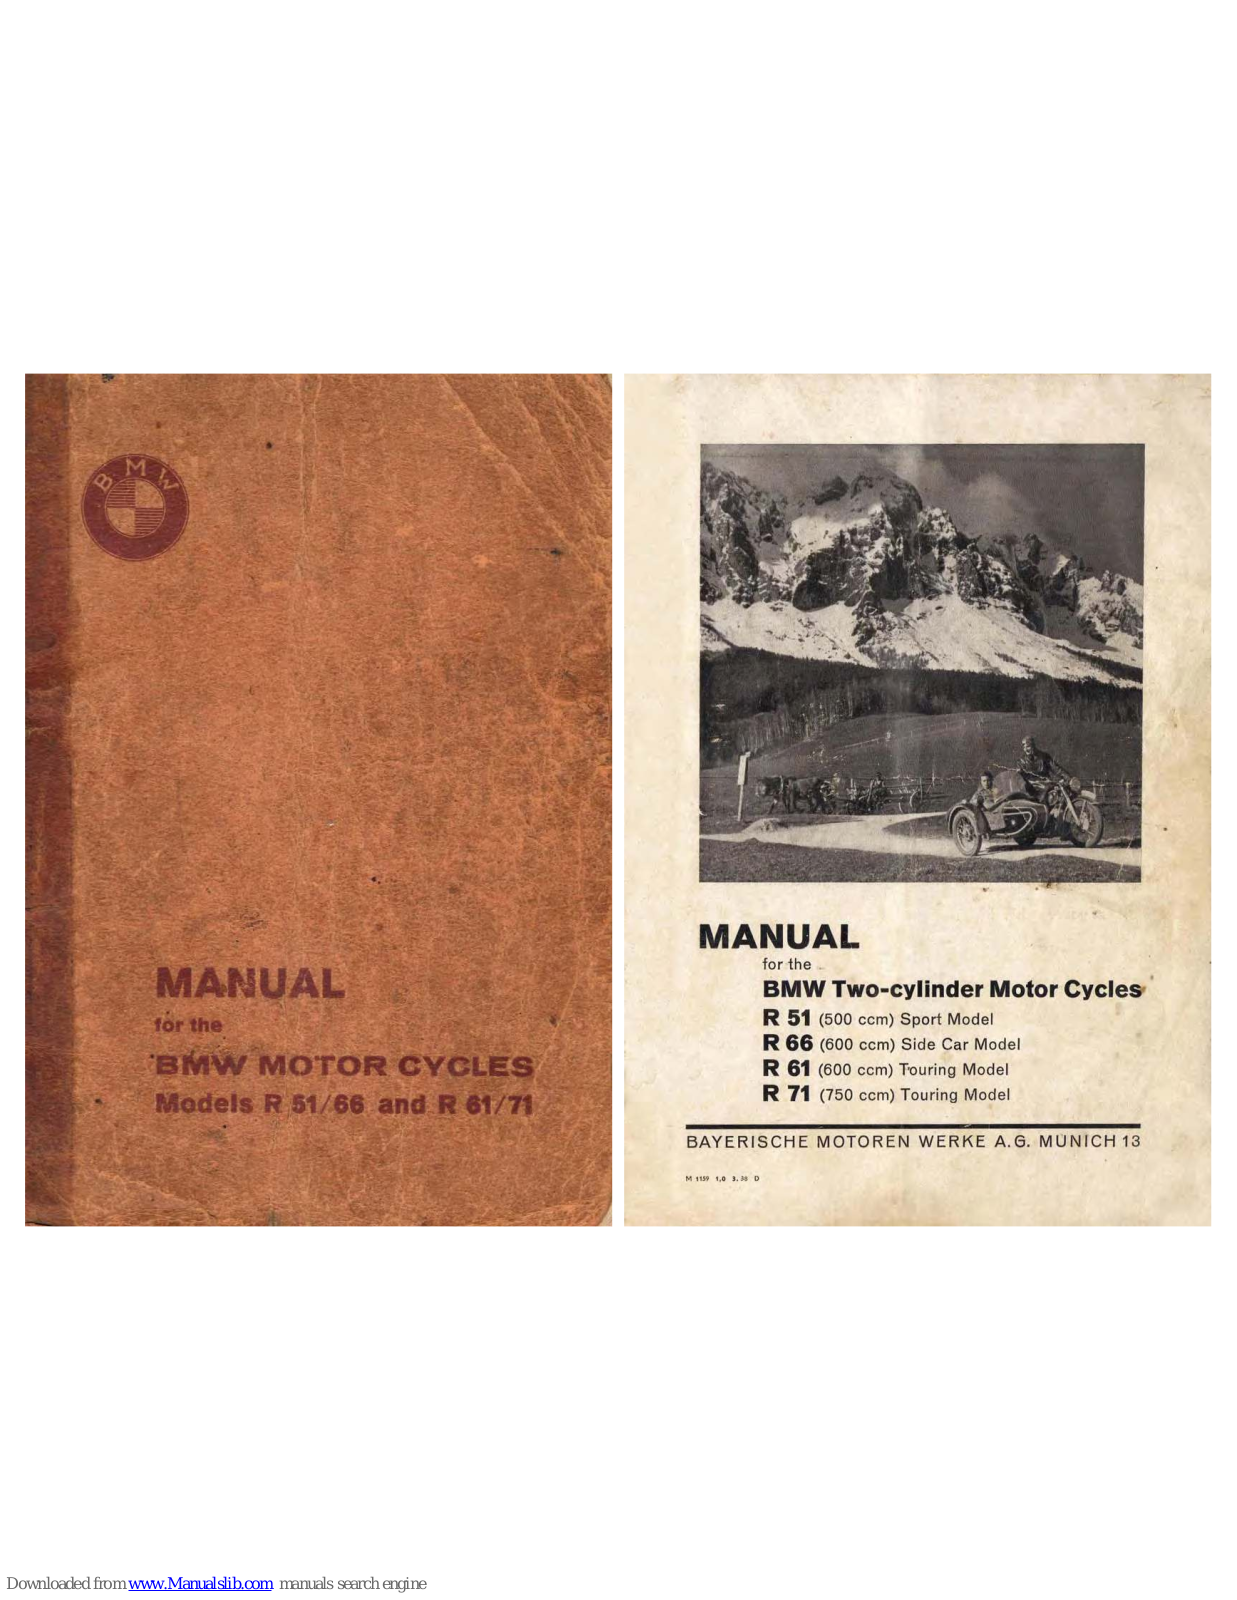 BMW R51 (1938), R66 (1938), R71 (1938), R61 (1938) Manual